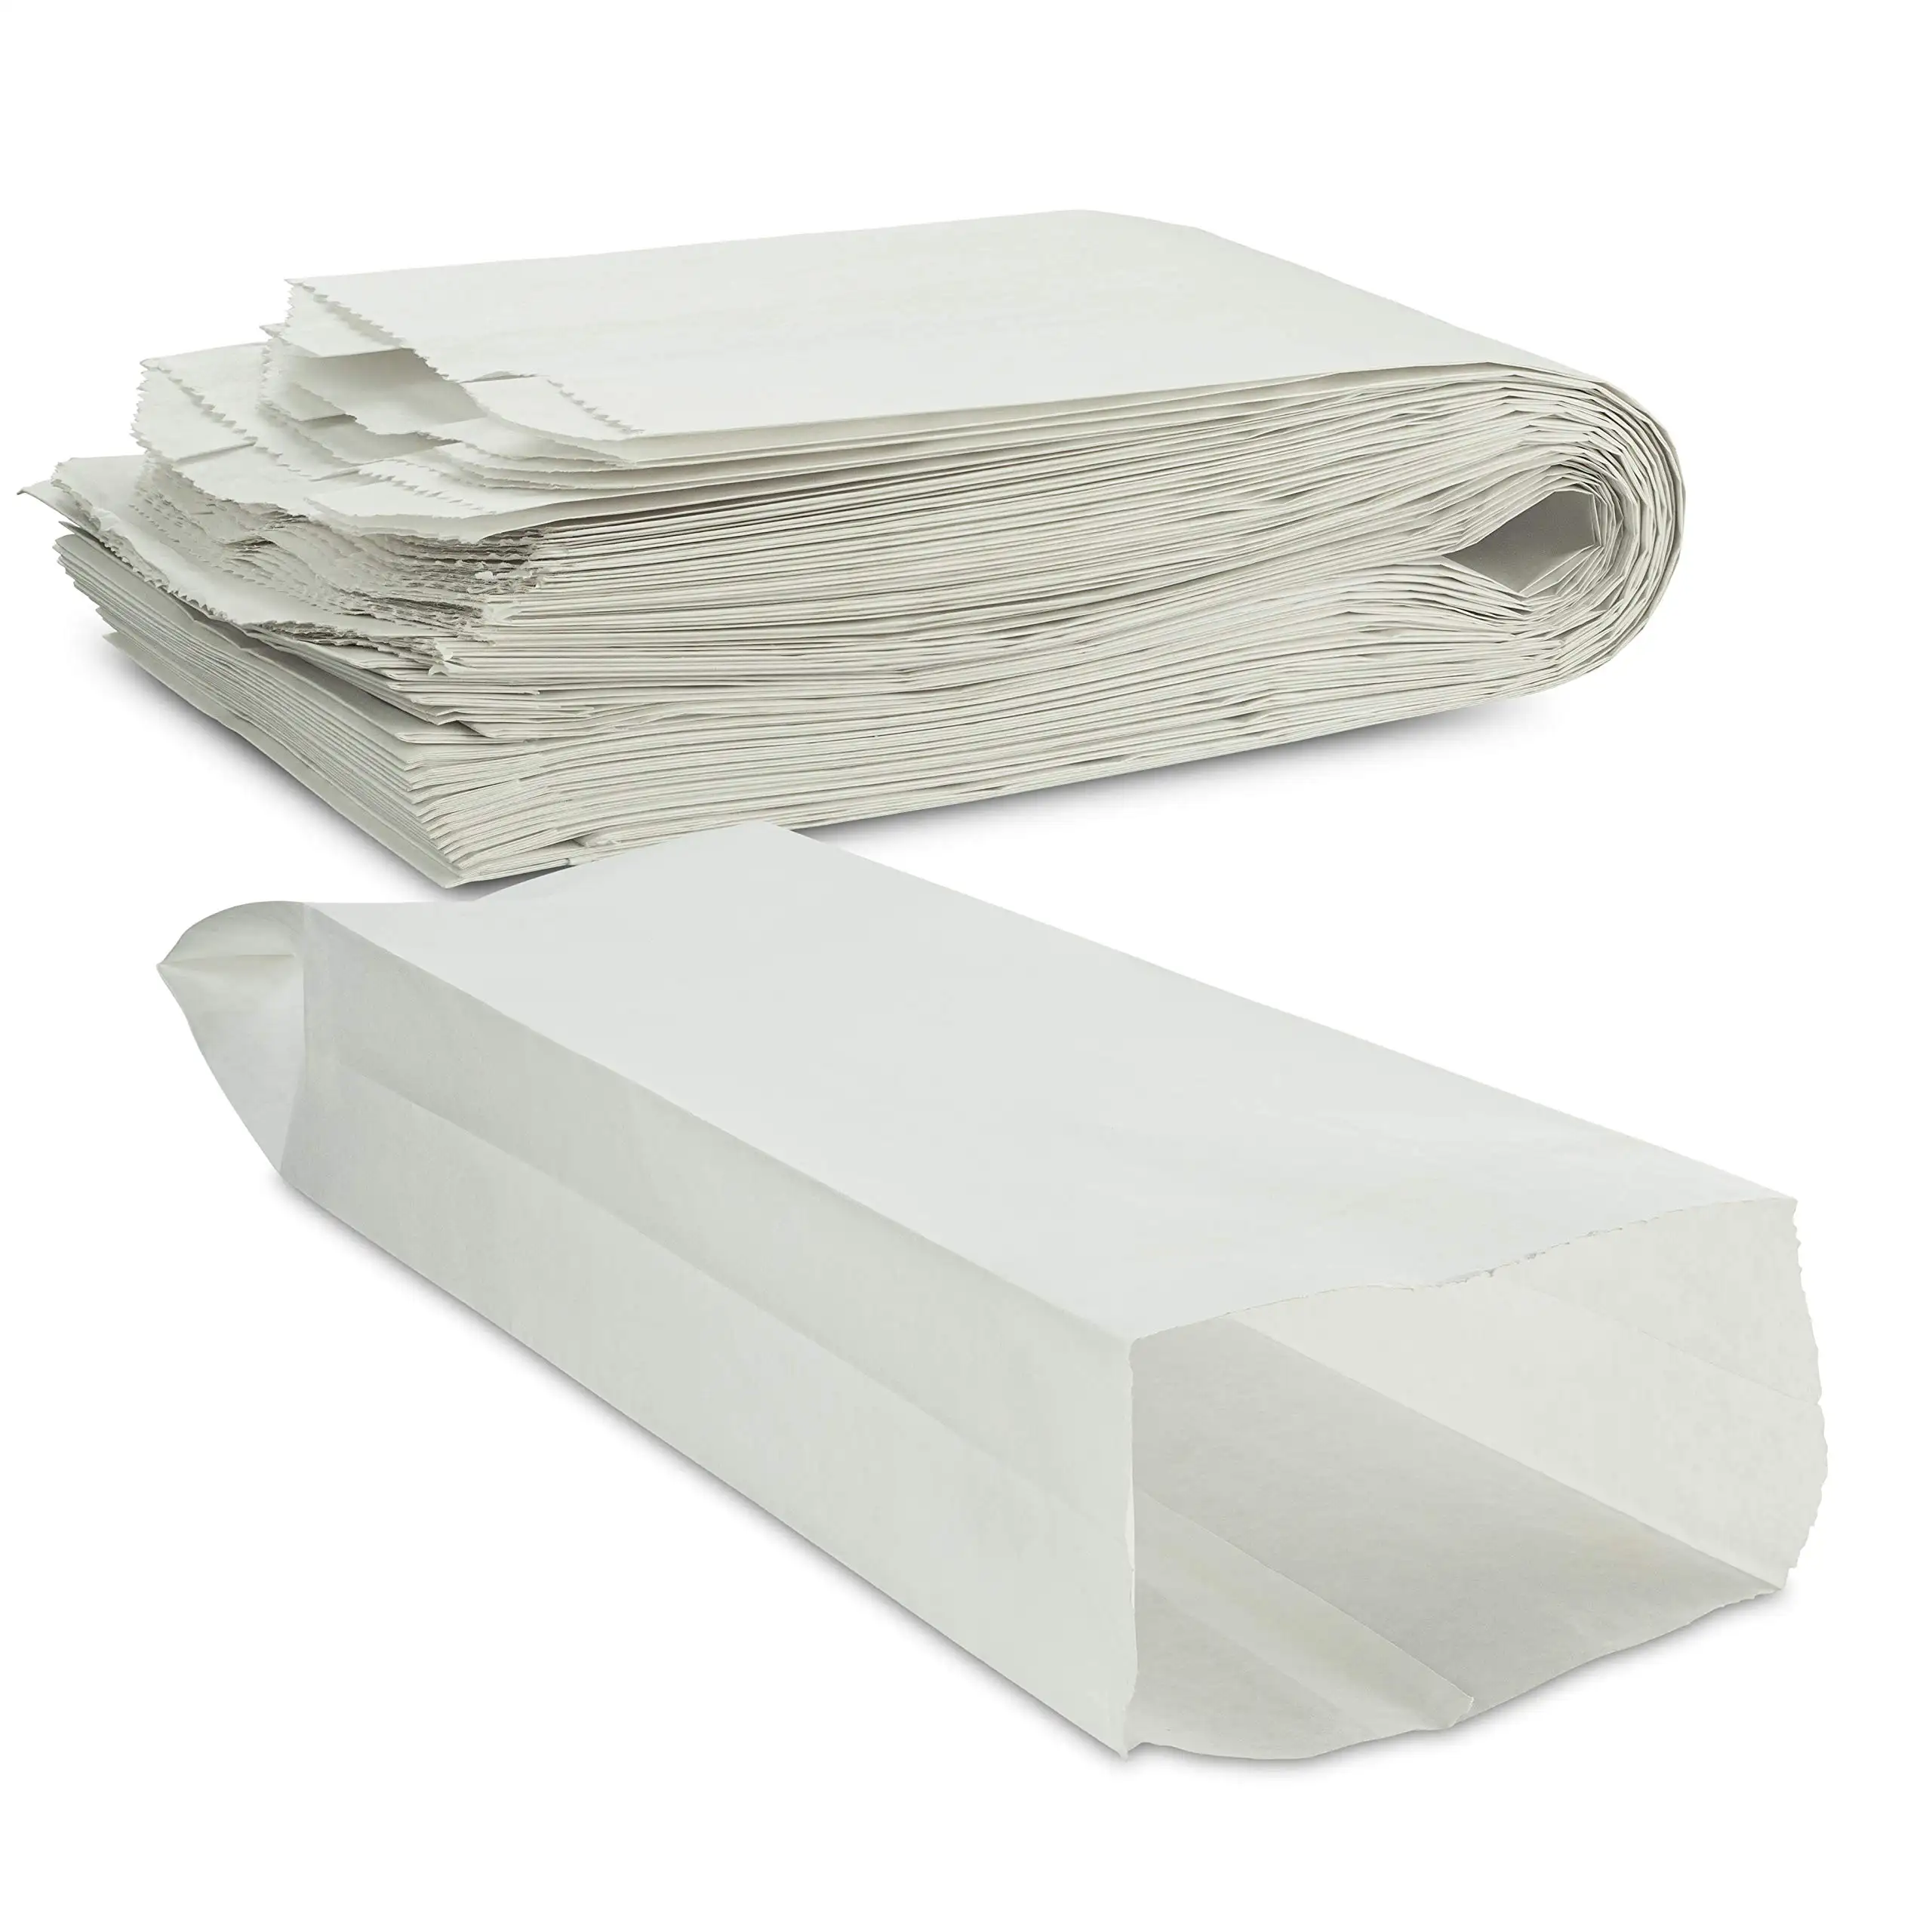 Bolsas de papel Baguette francés para pan, a prueba de aceite, cera, logotipo personalizado, respetuoso con el medio ambiente